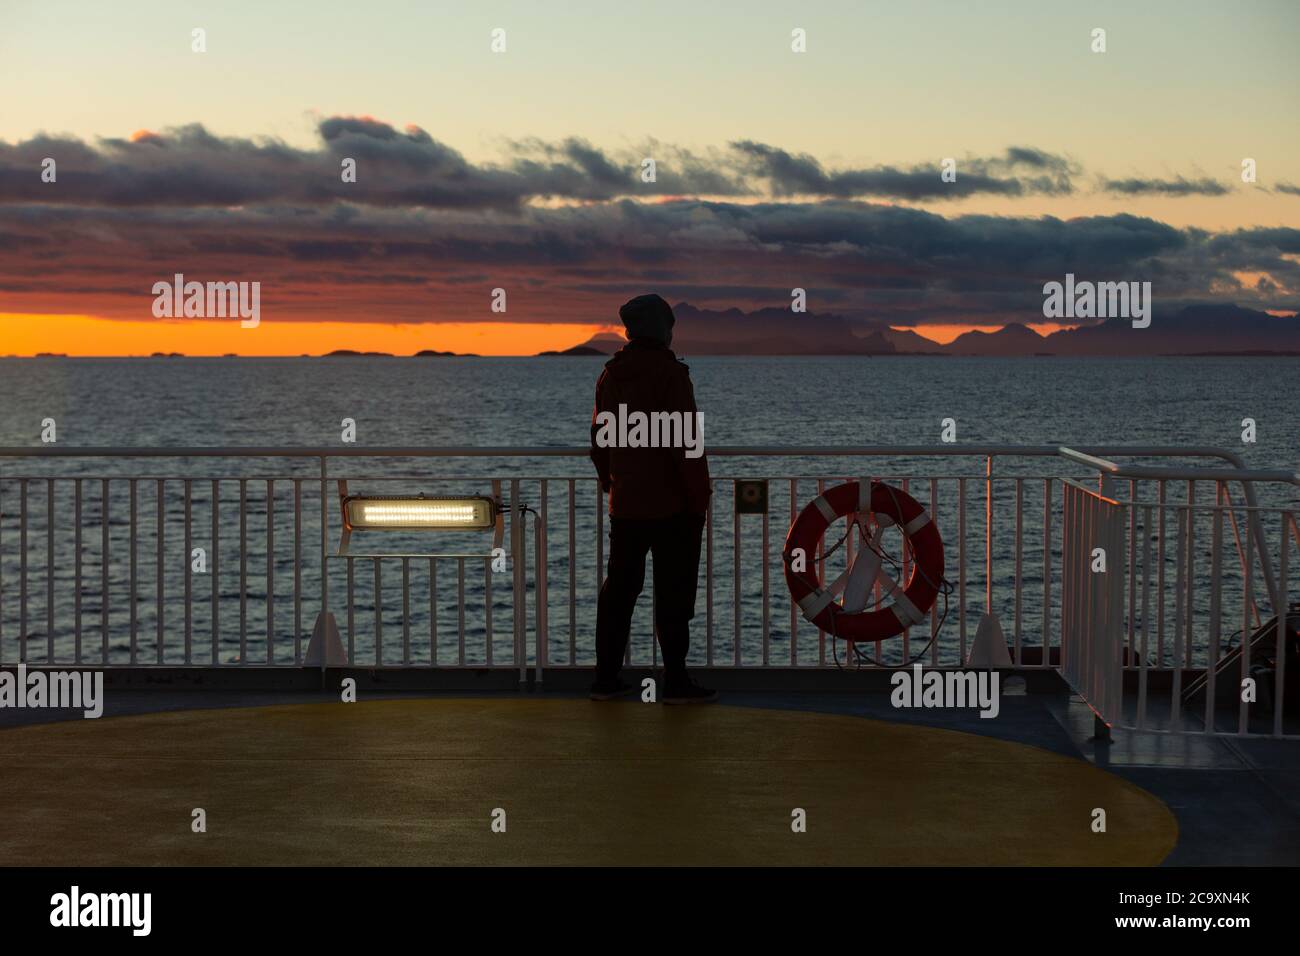 Un homme se tient sur le pont du ferry et observe le coucher de soleil sur l'océan Atlantique. Soleil polaire Banque D'Images